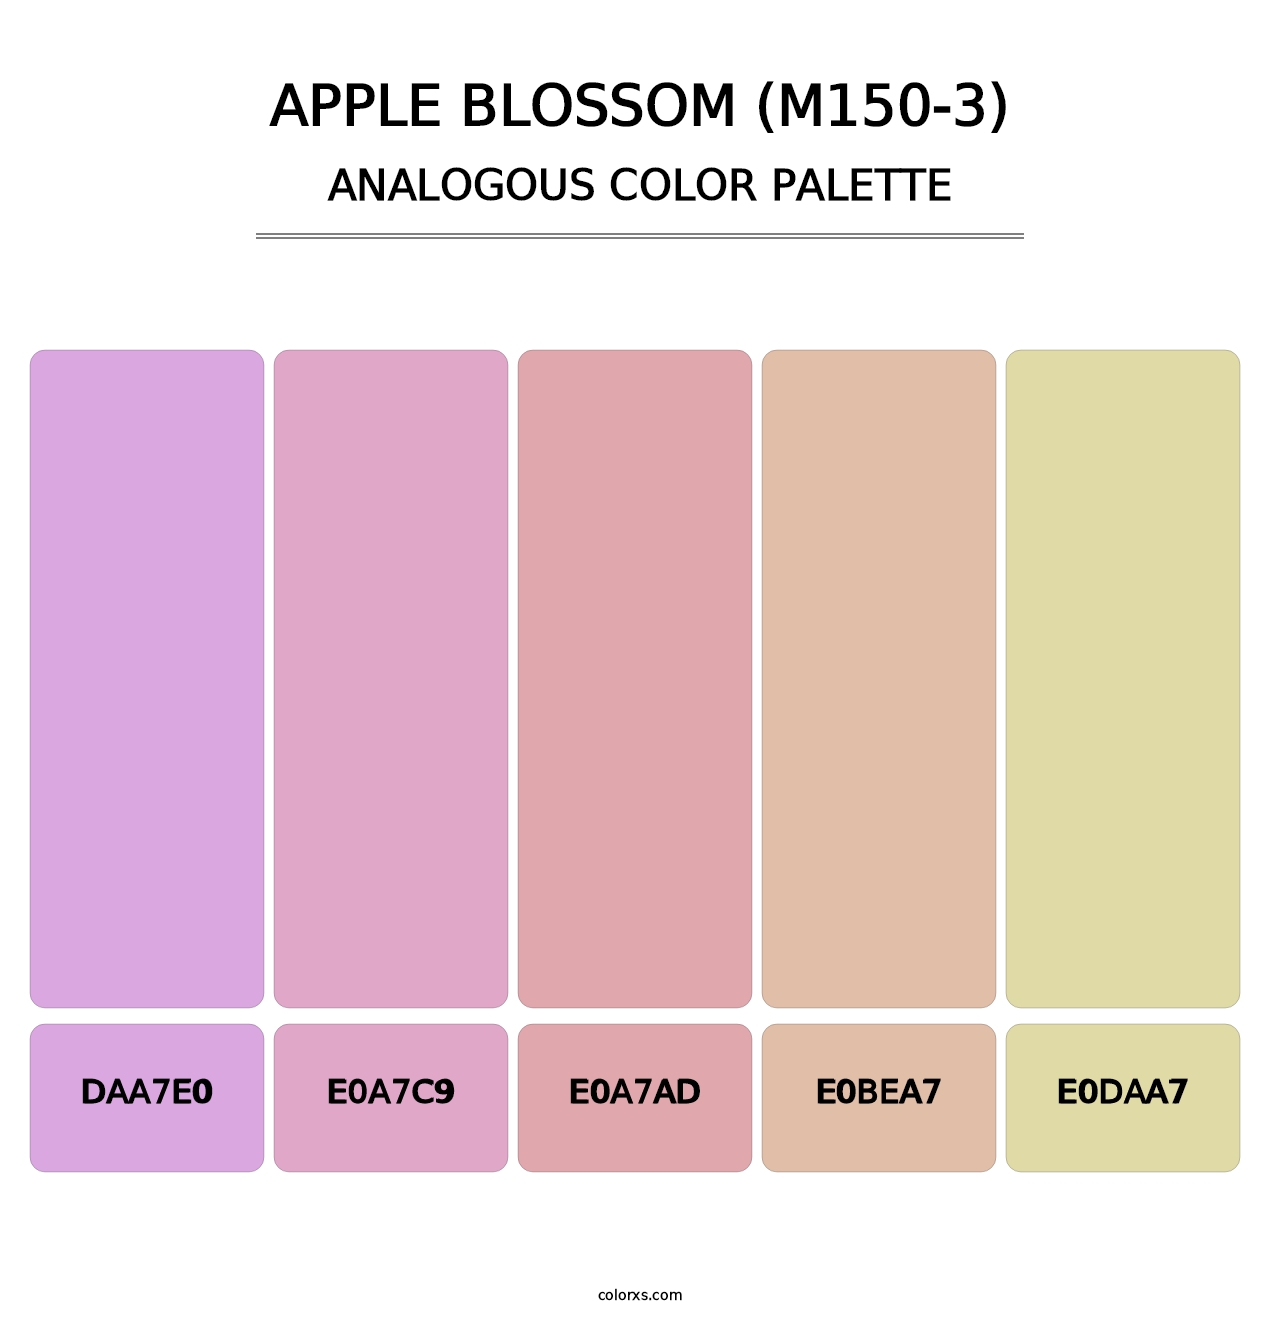 Apple Blossom (M150-3) - Analogous Color Palette